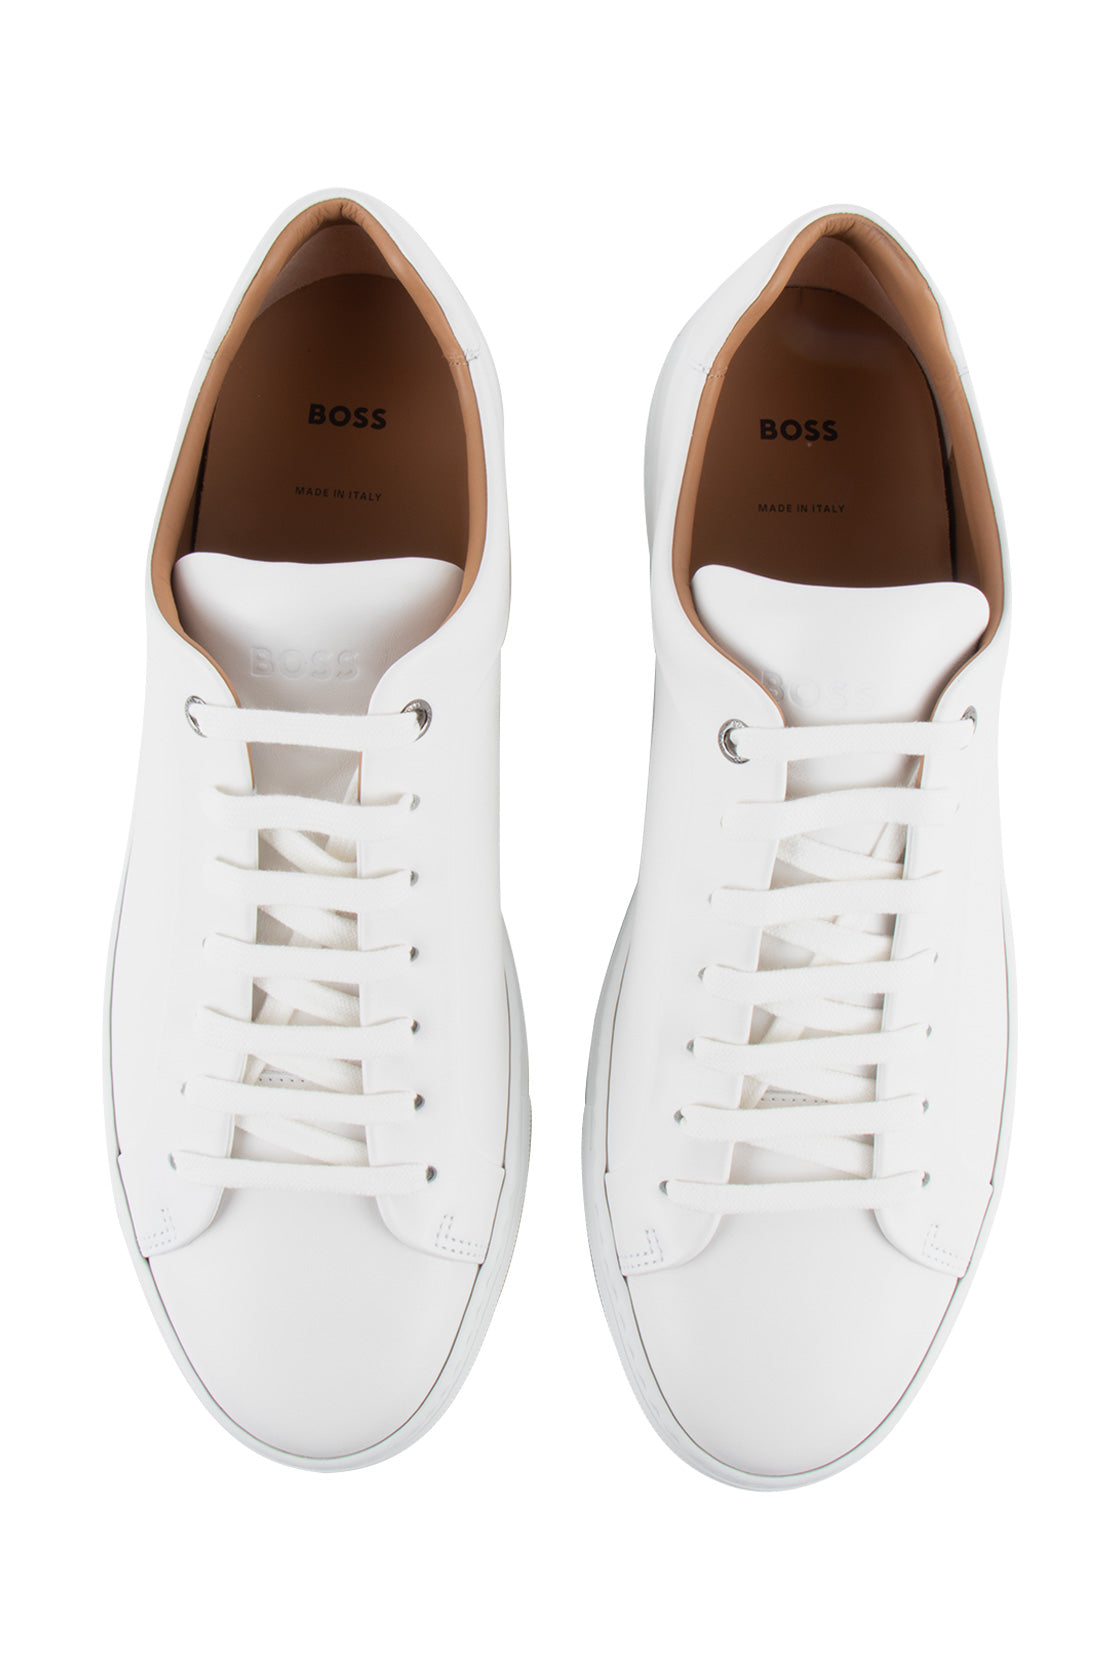 Hugo Boss Mirage Tenn Shoe Open White